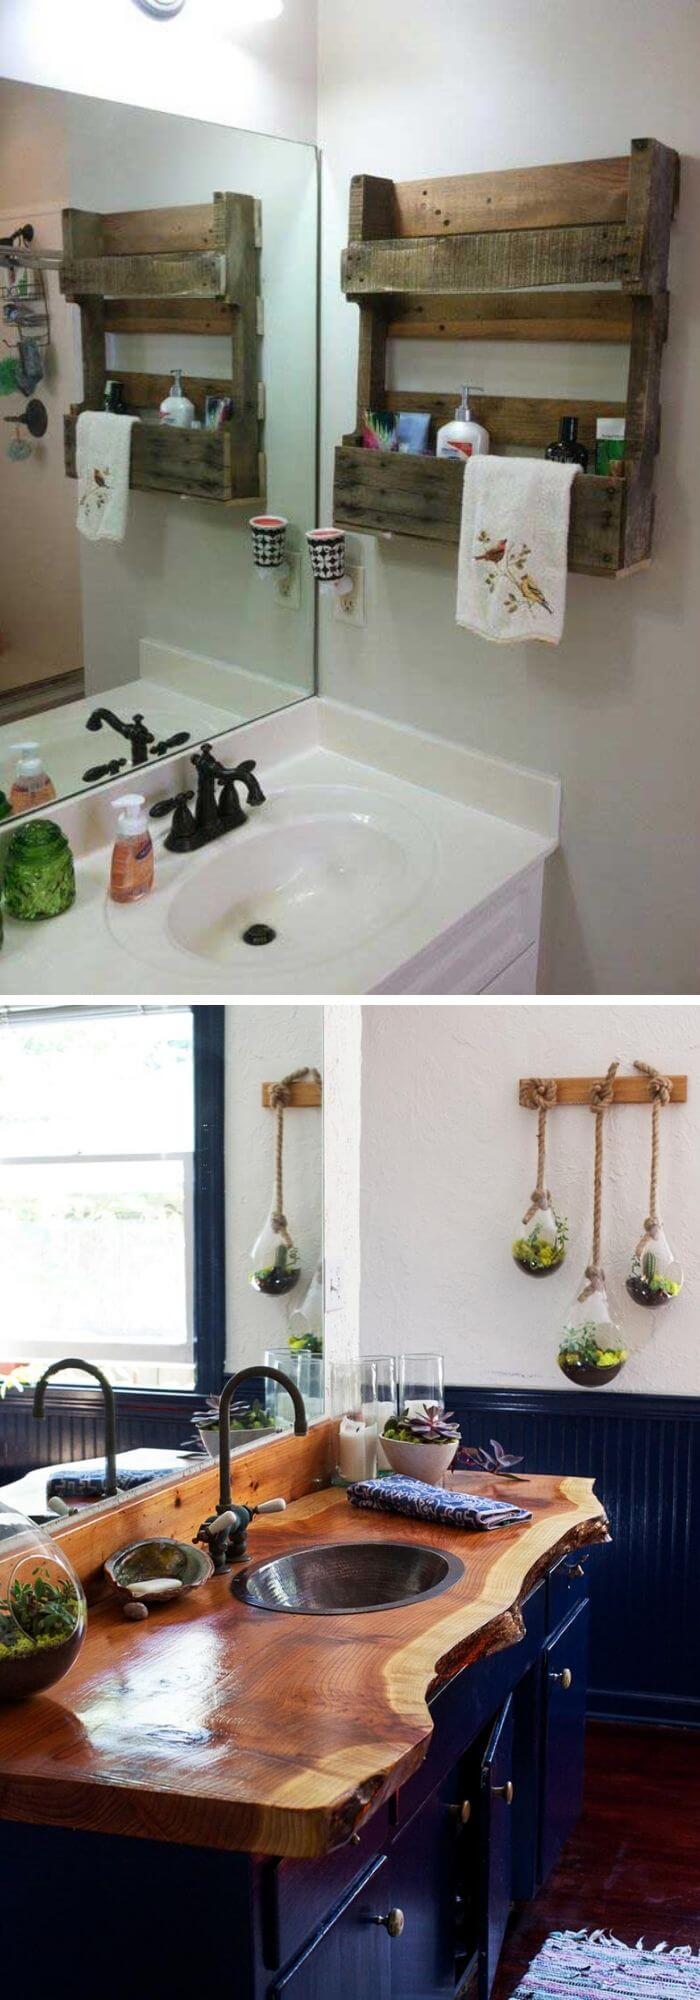 Bathroom wooden sink